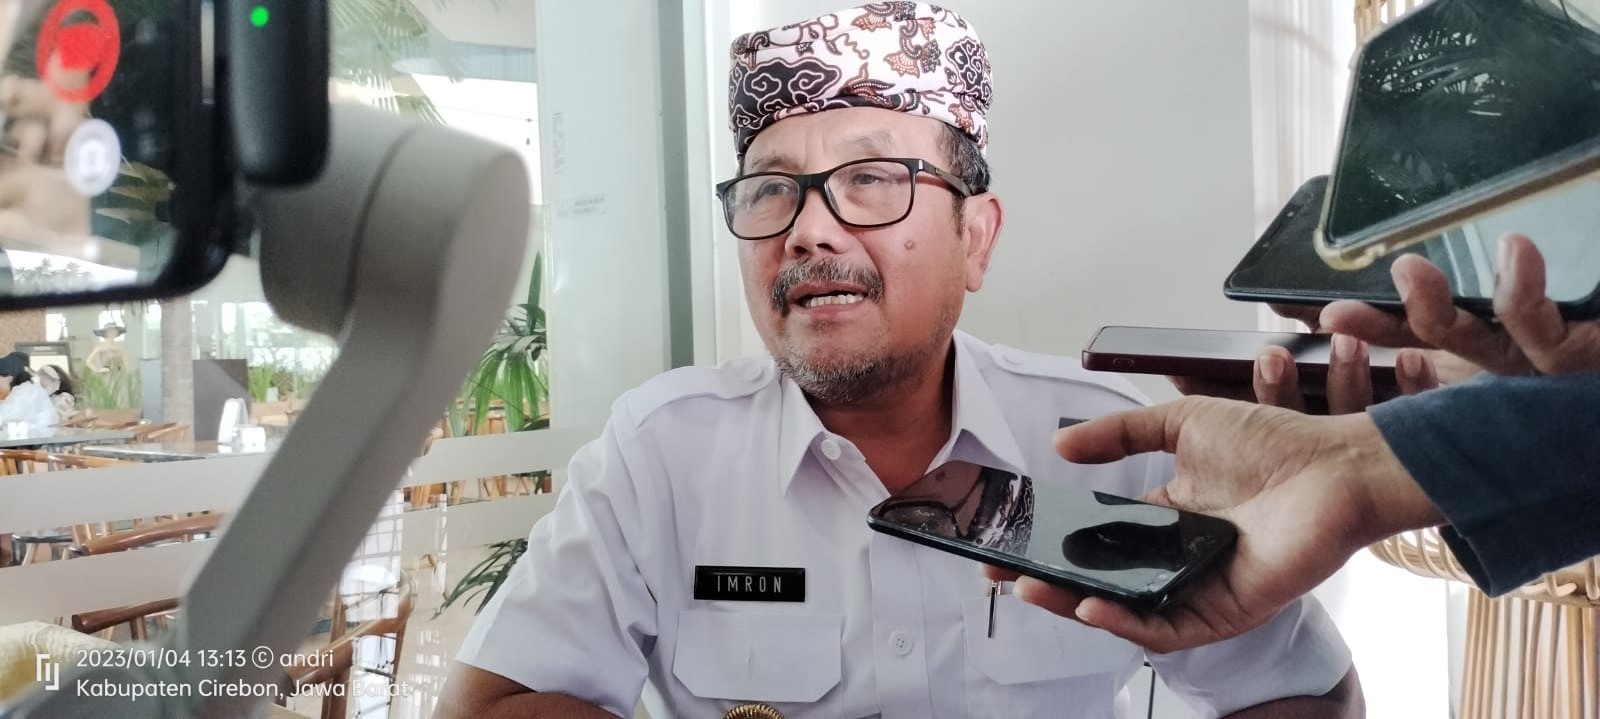 Bupati Cirebon Imron Gelar Mutasi Terakhir, BKPSDM Pastikan Tak Ada Masalah